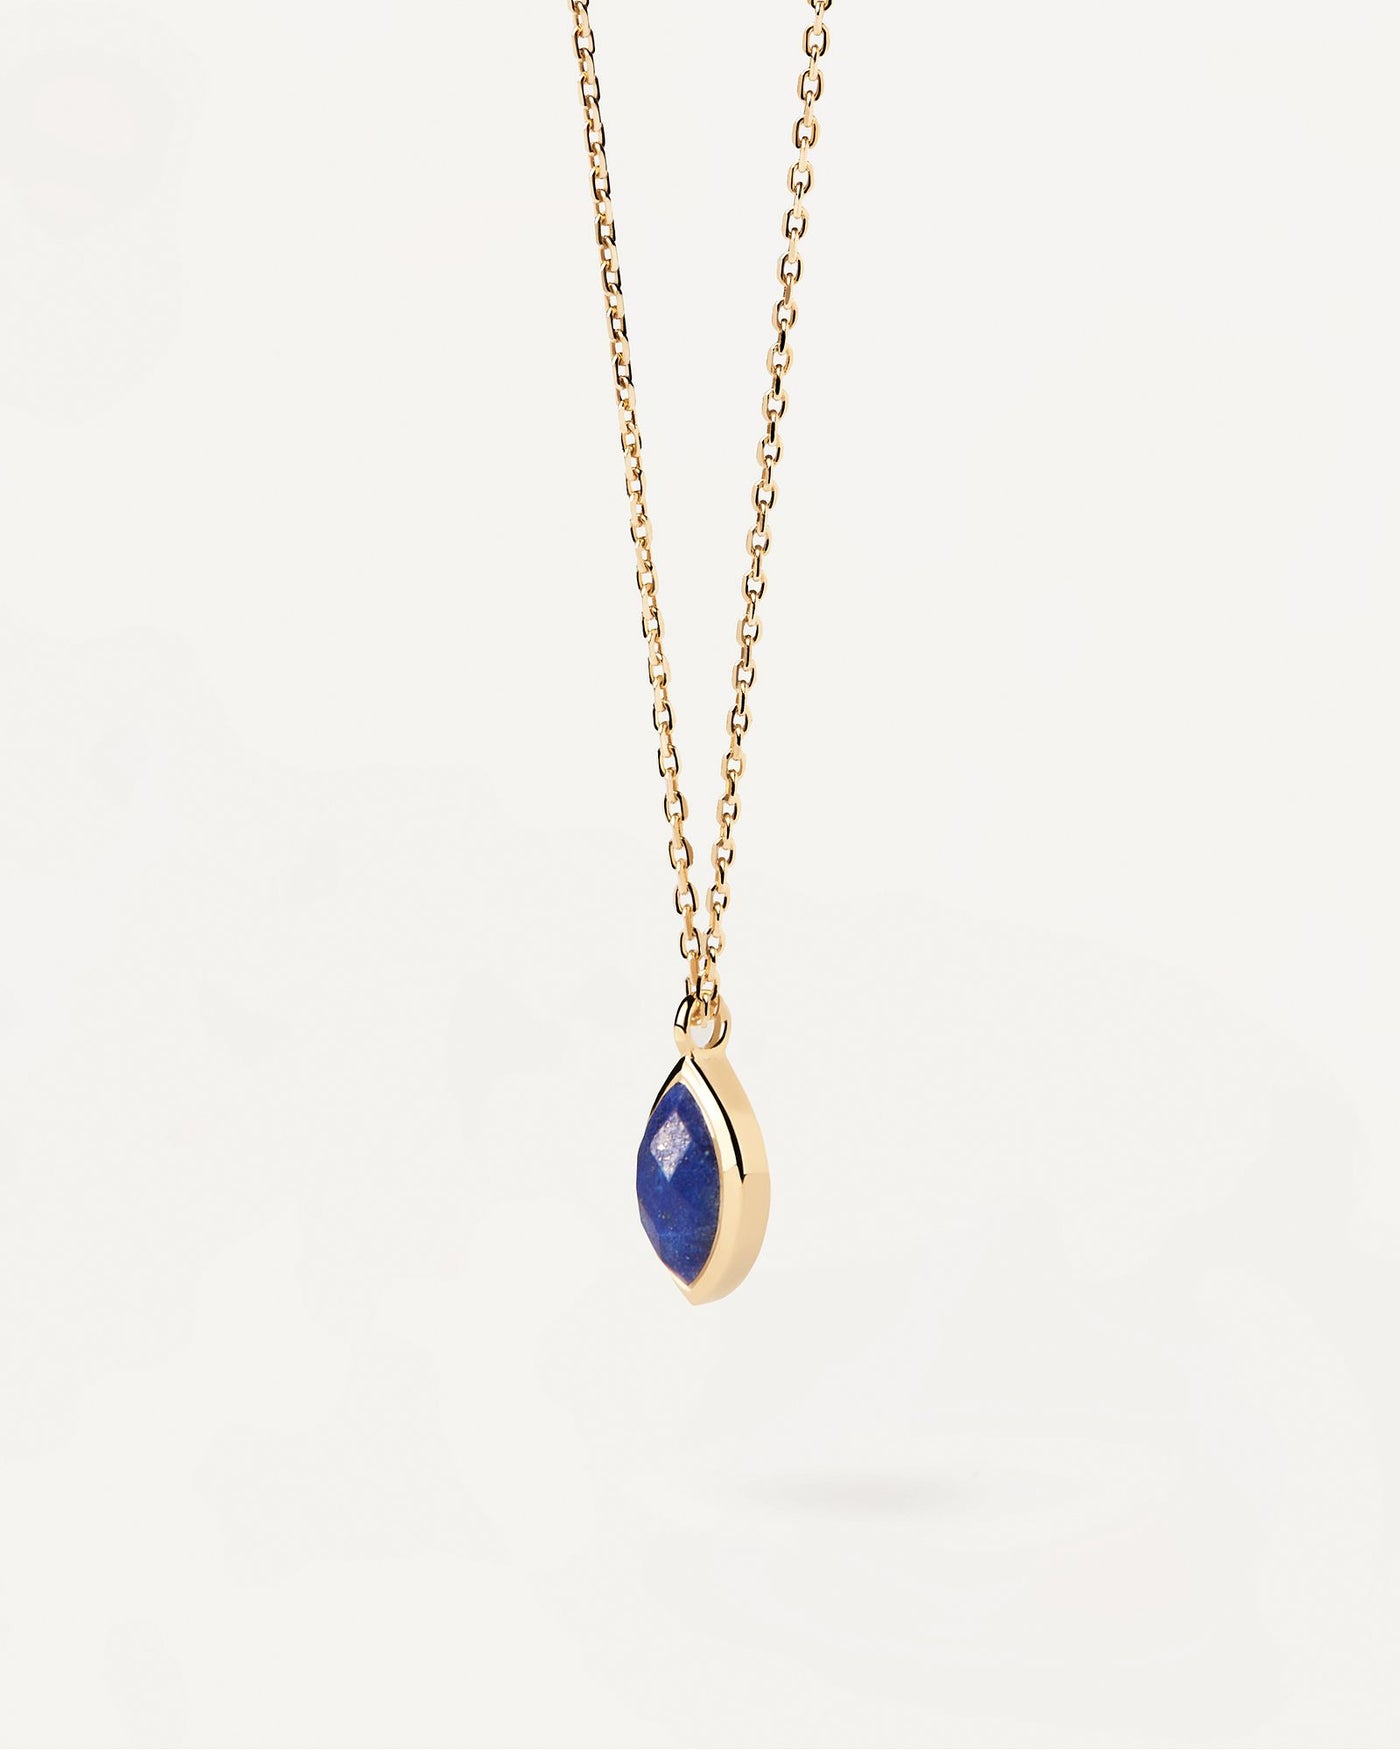 Sélection 2024 | Collier  Lapis-Lazuli Nomad. Collier chaîne plaquée or avec un pendentif en pierre fine bleue taillée en marquise. Découvrez les dernières nouveautés de chez PDPAOLA. Commandez et recevez votre bijou en toute sérénité. Livraison gratuite.